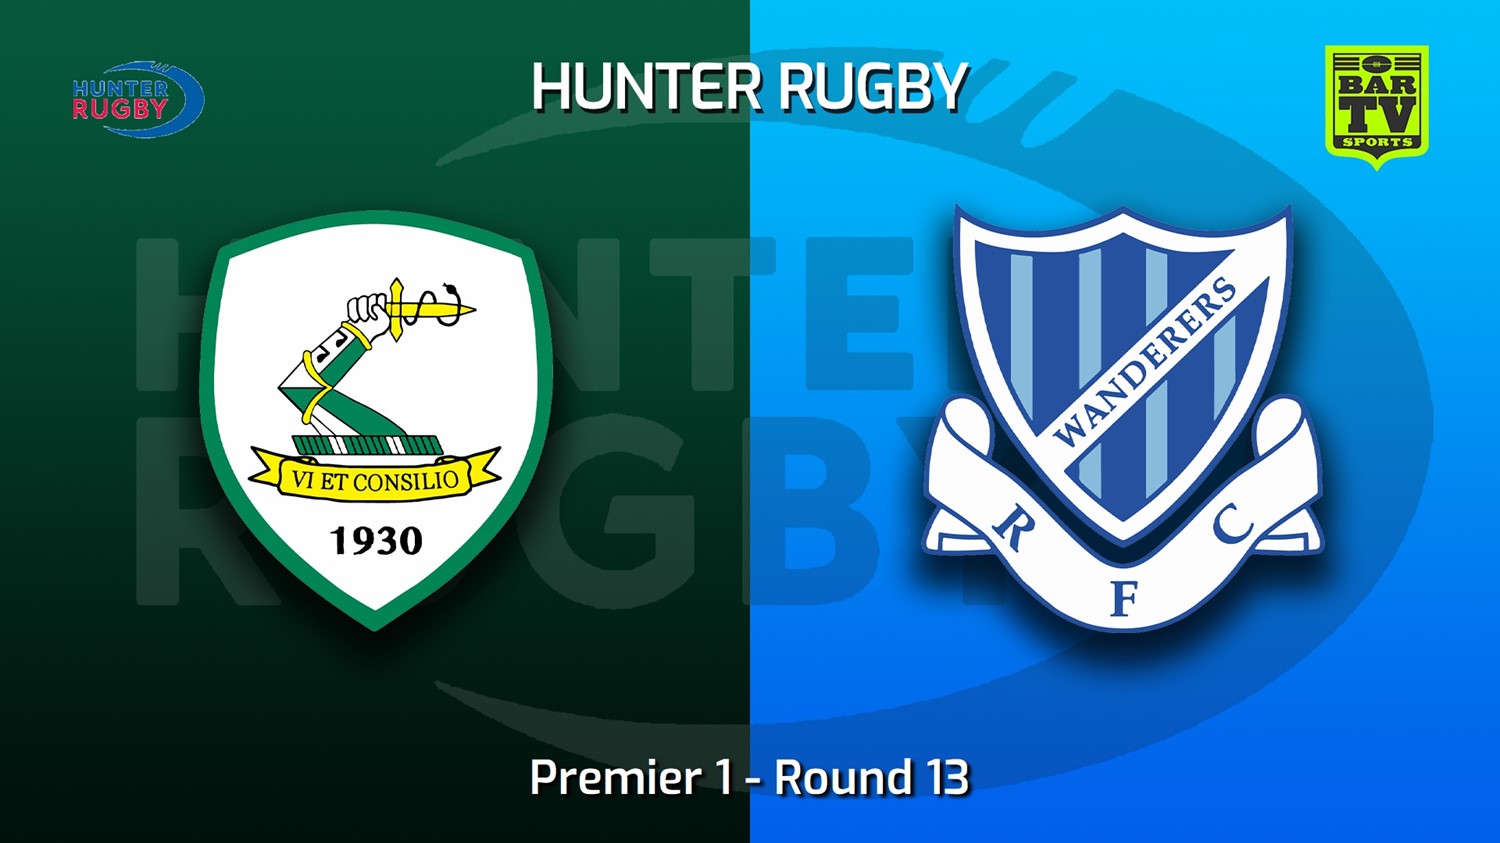 220723-Hunter Rugby Round 13 - Premier 1 - Merewether Carlton v Wanderers Slate Image